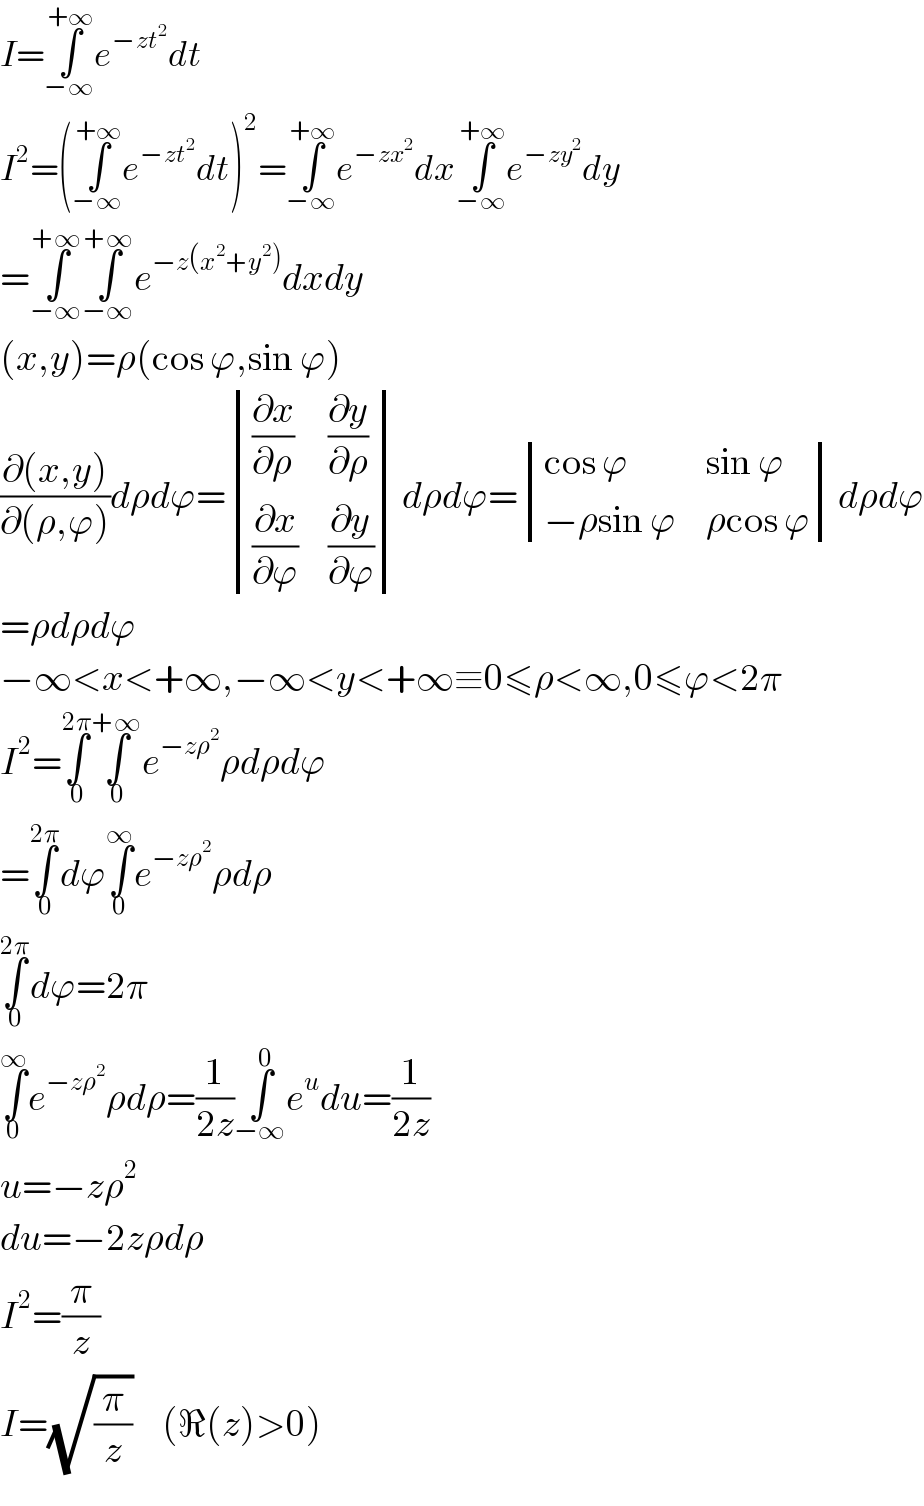 I=∫_(−∞) ^(+∞) e^(−zt^2 ) dt  I^2 =(∫_(−∞) ^(+∞) e^(−zt^2 ) dt)^2 =∫_(−∞) ^(+∞) e^(−zx^2 ) dx∫_(−∞) ^(+∞) e^(−zy^2 ) dy  =∫_(−∞) ^(+∞) ∫_(−∞) ^(+∞) e^(−z(x^2 +y^2 )) dxdy  (x,y)=ρ(cos ϕ,sin ϕ)  ((∂(x,y))/(∂(ρ,ϕ)))dρdϕ= determinant (((∂x/∂ρ),(∂y/∂ρ)),((∂x/∂ϕ),(∂y/∂ϕ)))dρdϕ= determinant (((cos ϕ),(sin ϕ)),((−ρsin ϕ),(ρcos ϕ)))dρdϕ  =ρdρdϕ  −∞<x<+∞,−∞<y<+∞≡0≤ρ<∞,0≤ϕ<2π  I^2 =∫_0 ^(2π) ∫_0 ^(+∞) e^(−zρ^2 ) ρdρdϕ  =∫_0 ^(2π) dϕ∫_0 ^∞ e^(−zρ^2 ) ρdρ  ∫_0 ^(2π) dϕ=2π  ∫_0 ^∞ e^(−zρ^2 ) ρdρ=(1/(2z))∫_(−∞) ^0 e^u du=(1/(2z))  u=−zρ^2   du=−2zρdρ  I^2 =(π/z)  I=(√(π/z))     (ℜ(z)>0)  